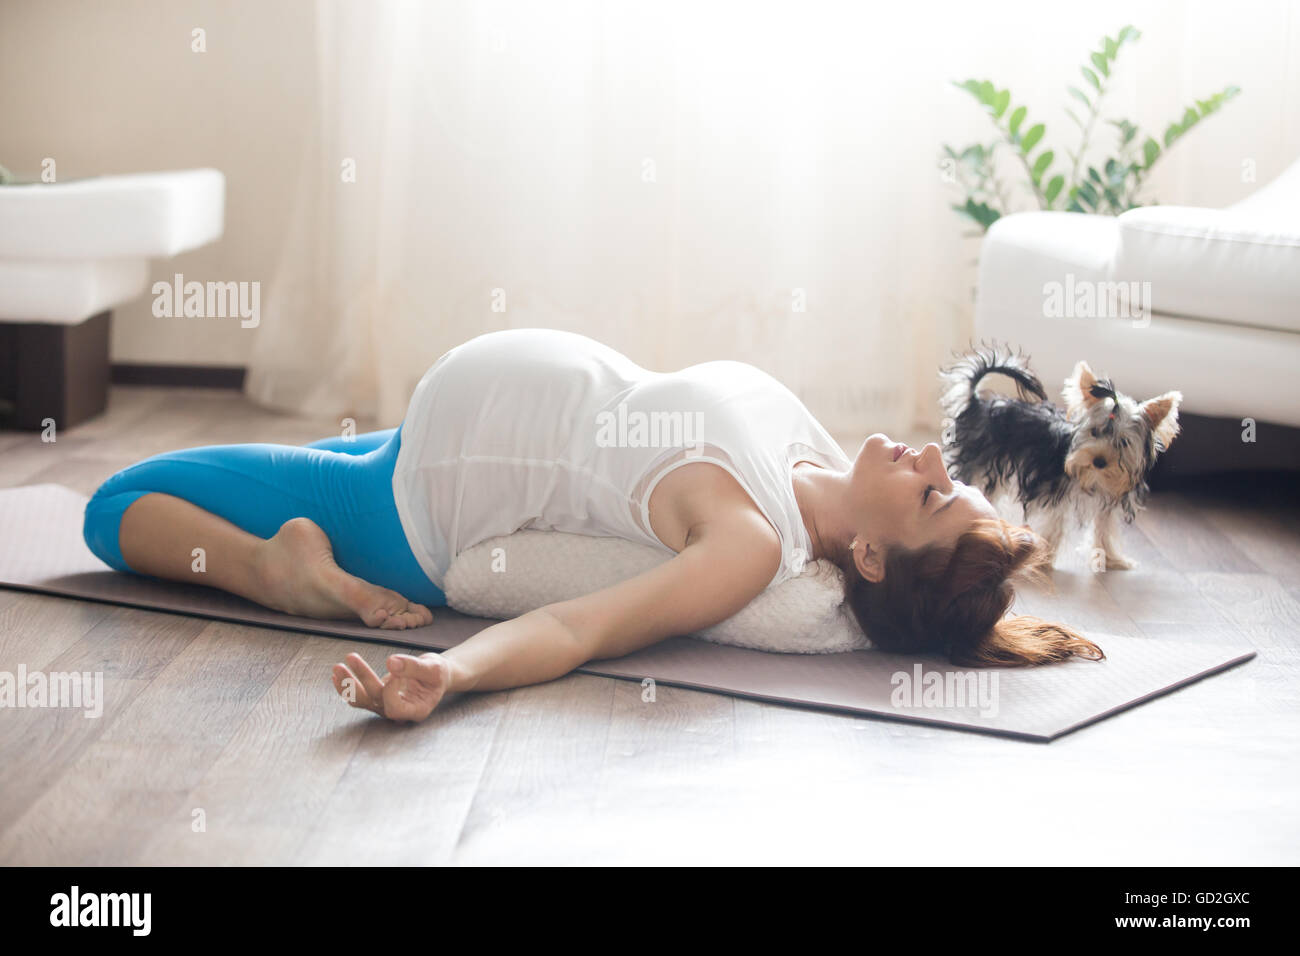 Gesunder Lifestyle-Konzept. Schwangerschaft-Yoga und Fitness. Junge schwangere Yoga Frau mit ihrem Hund im Wohnzimmer trainieren Stockfoto